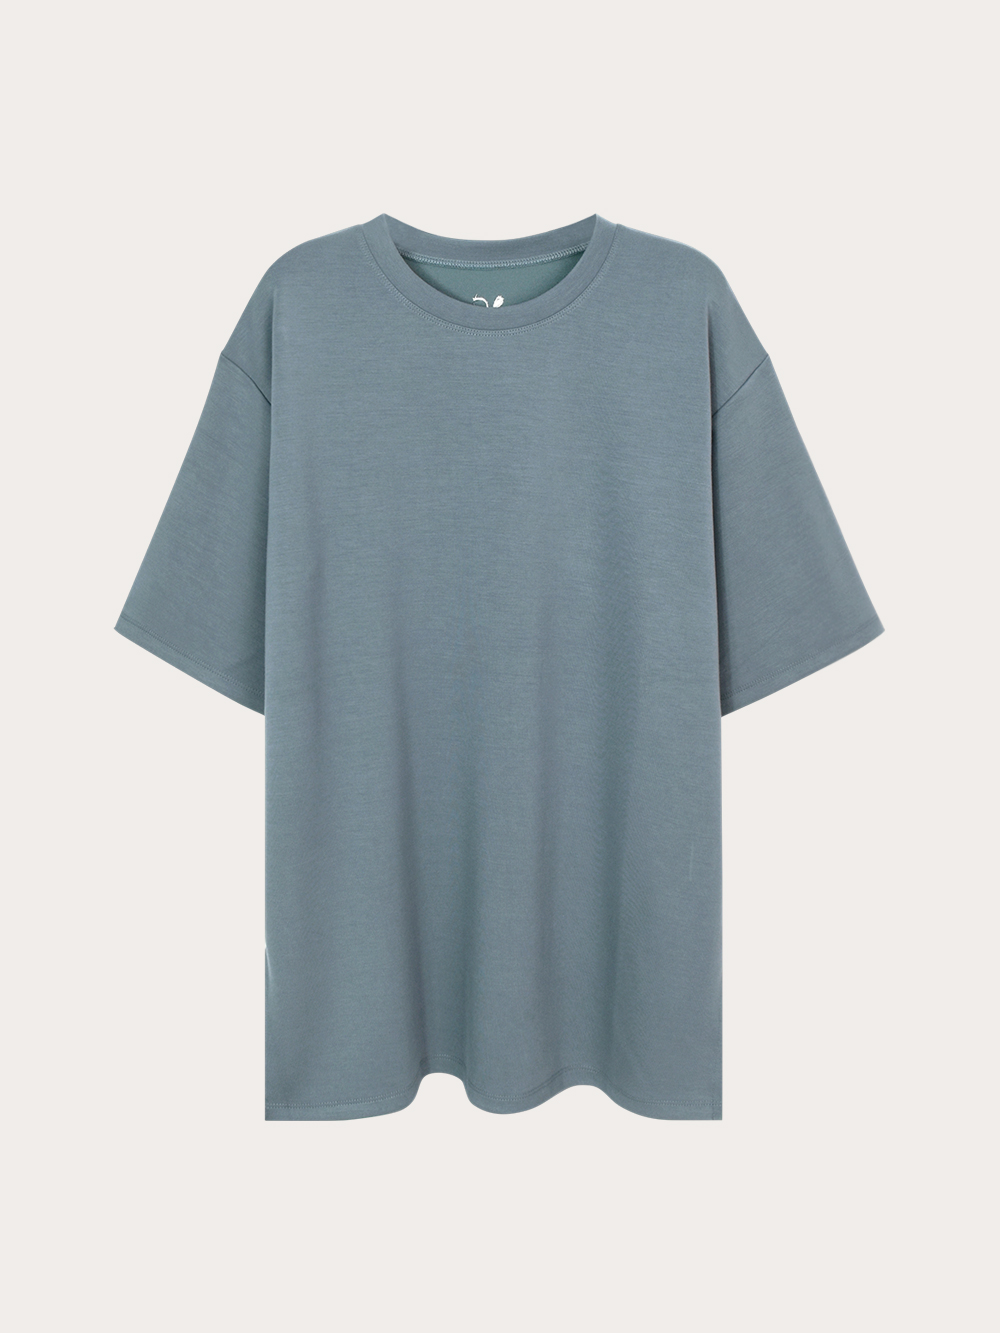 소프트 루즈핏 반팔 티셔츠 (2차 예약주문) - 허앤쉬